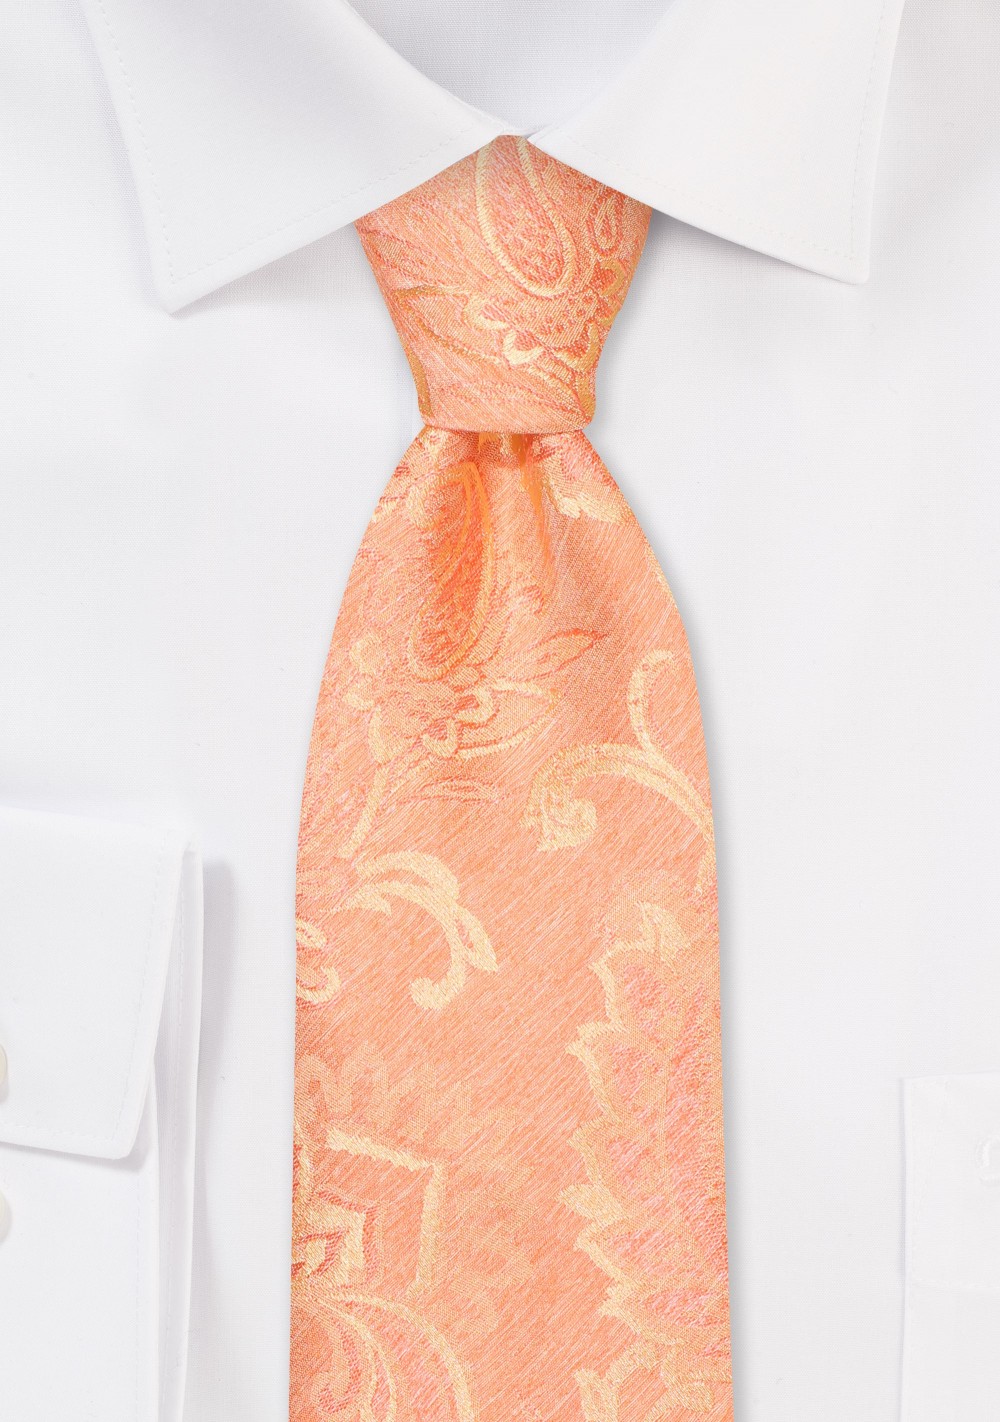 Woolen Paisley Skinny Tie in Tangerine